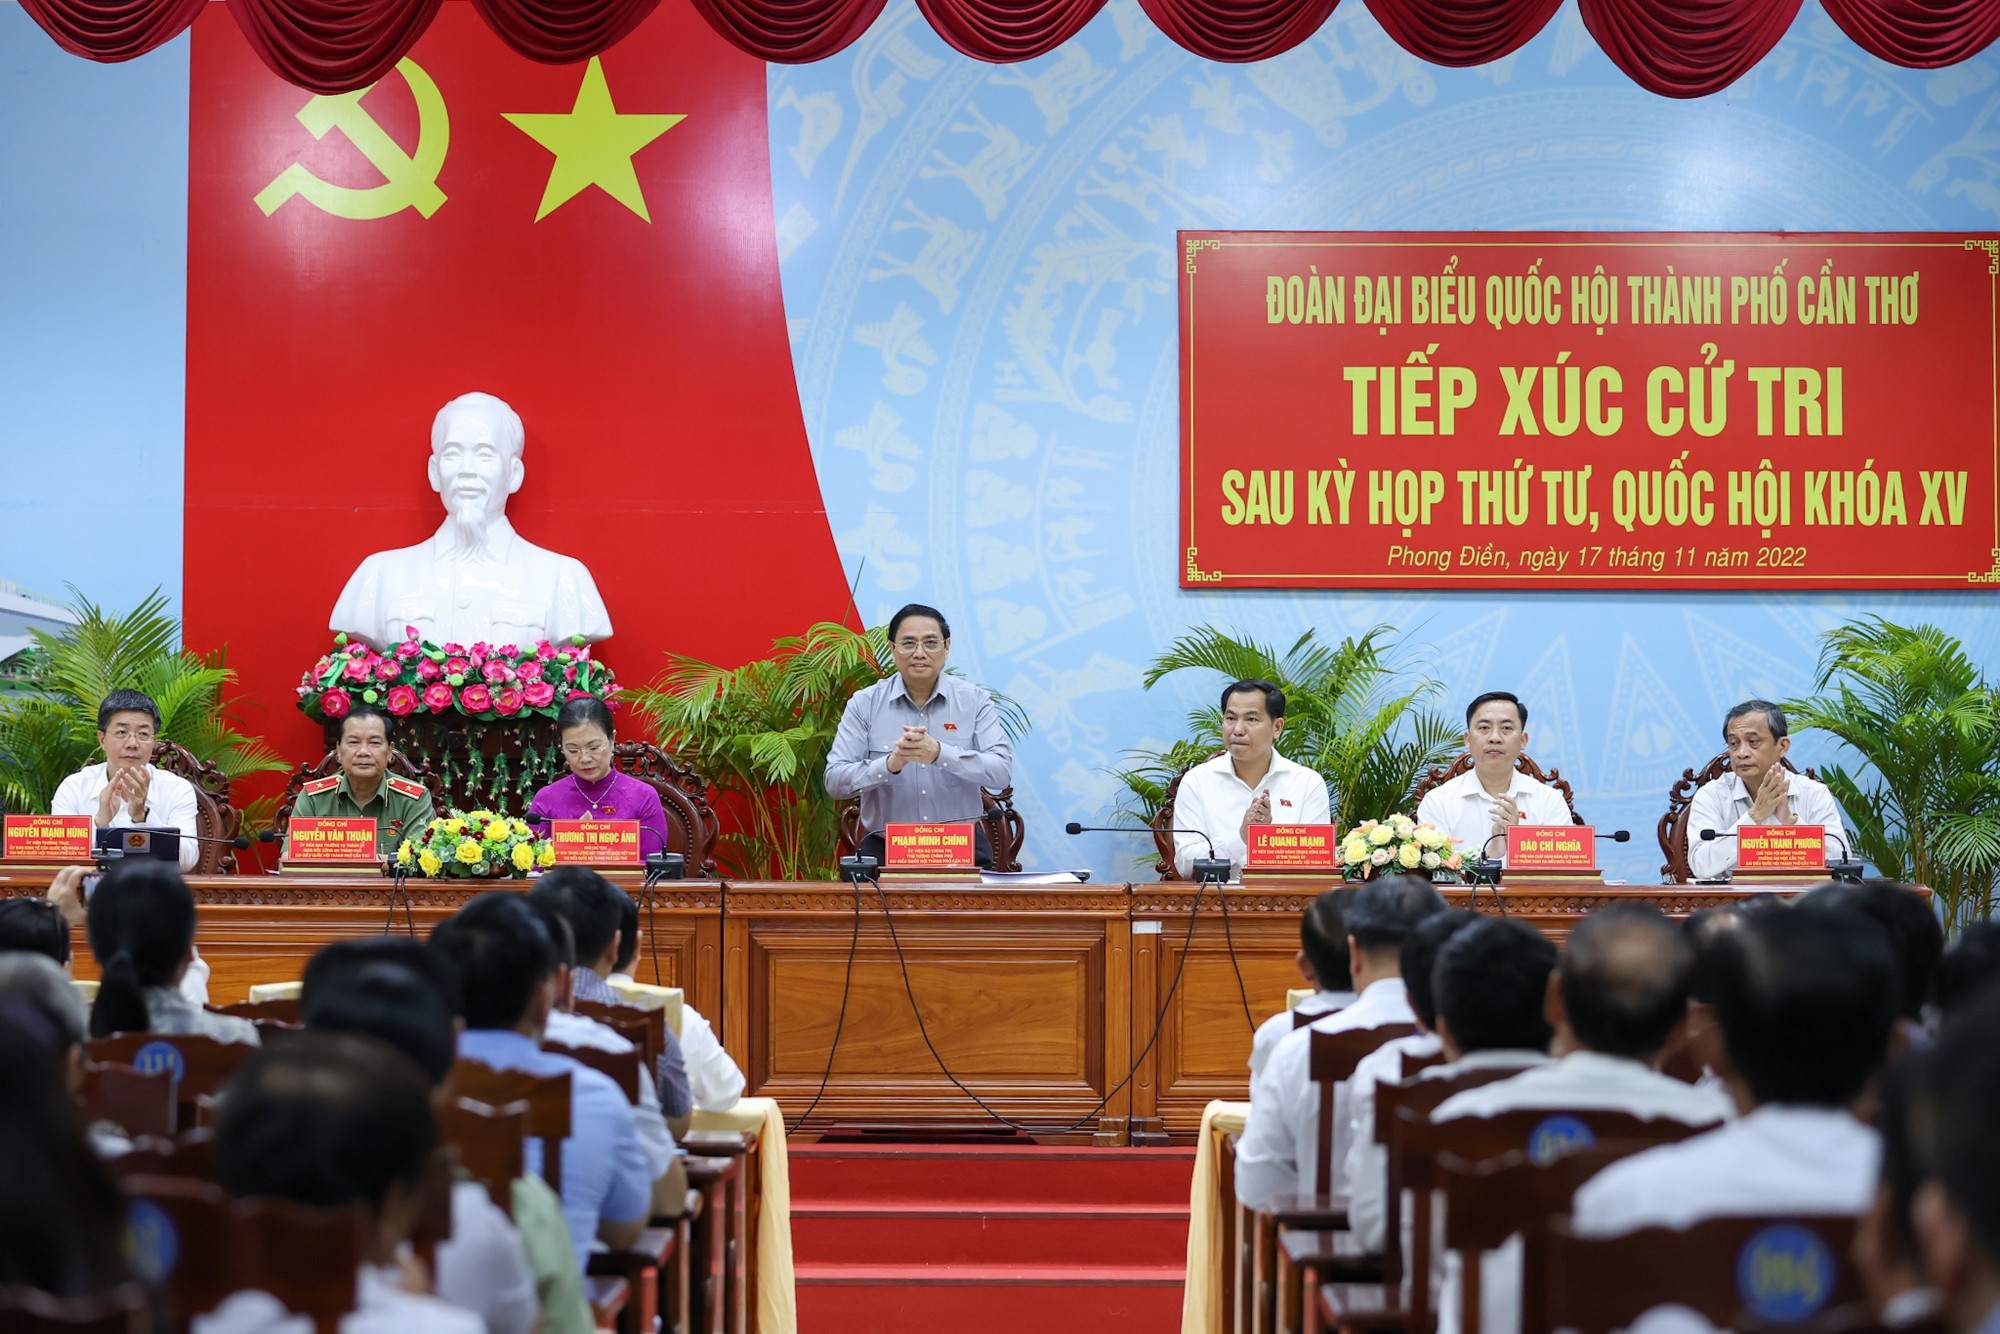 Chùm ảnh: Thủ tướng Phạm Minh Chính tiếp xúc cử tri Cần Thơ - Ảnh 2.